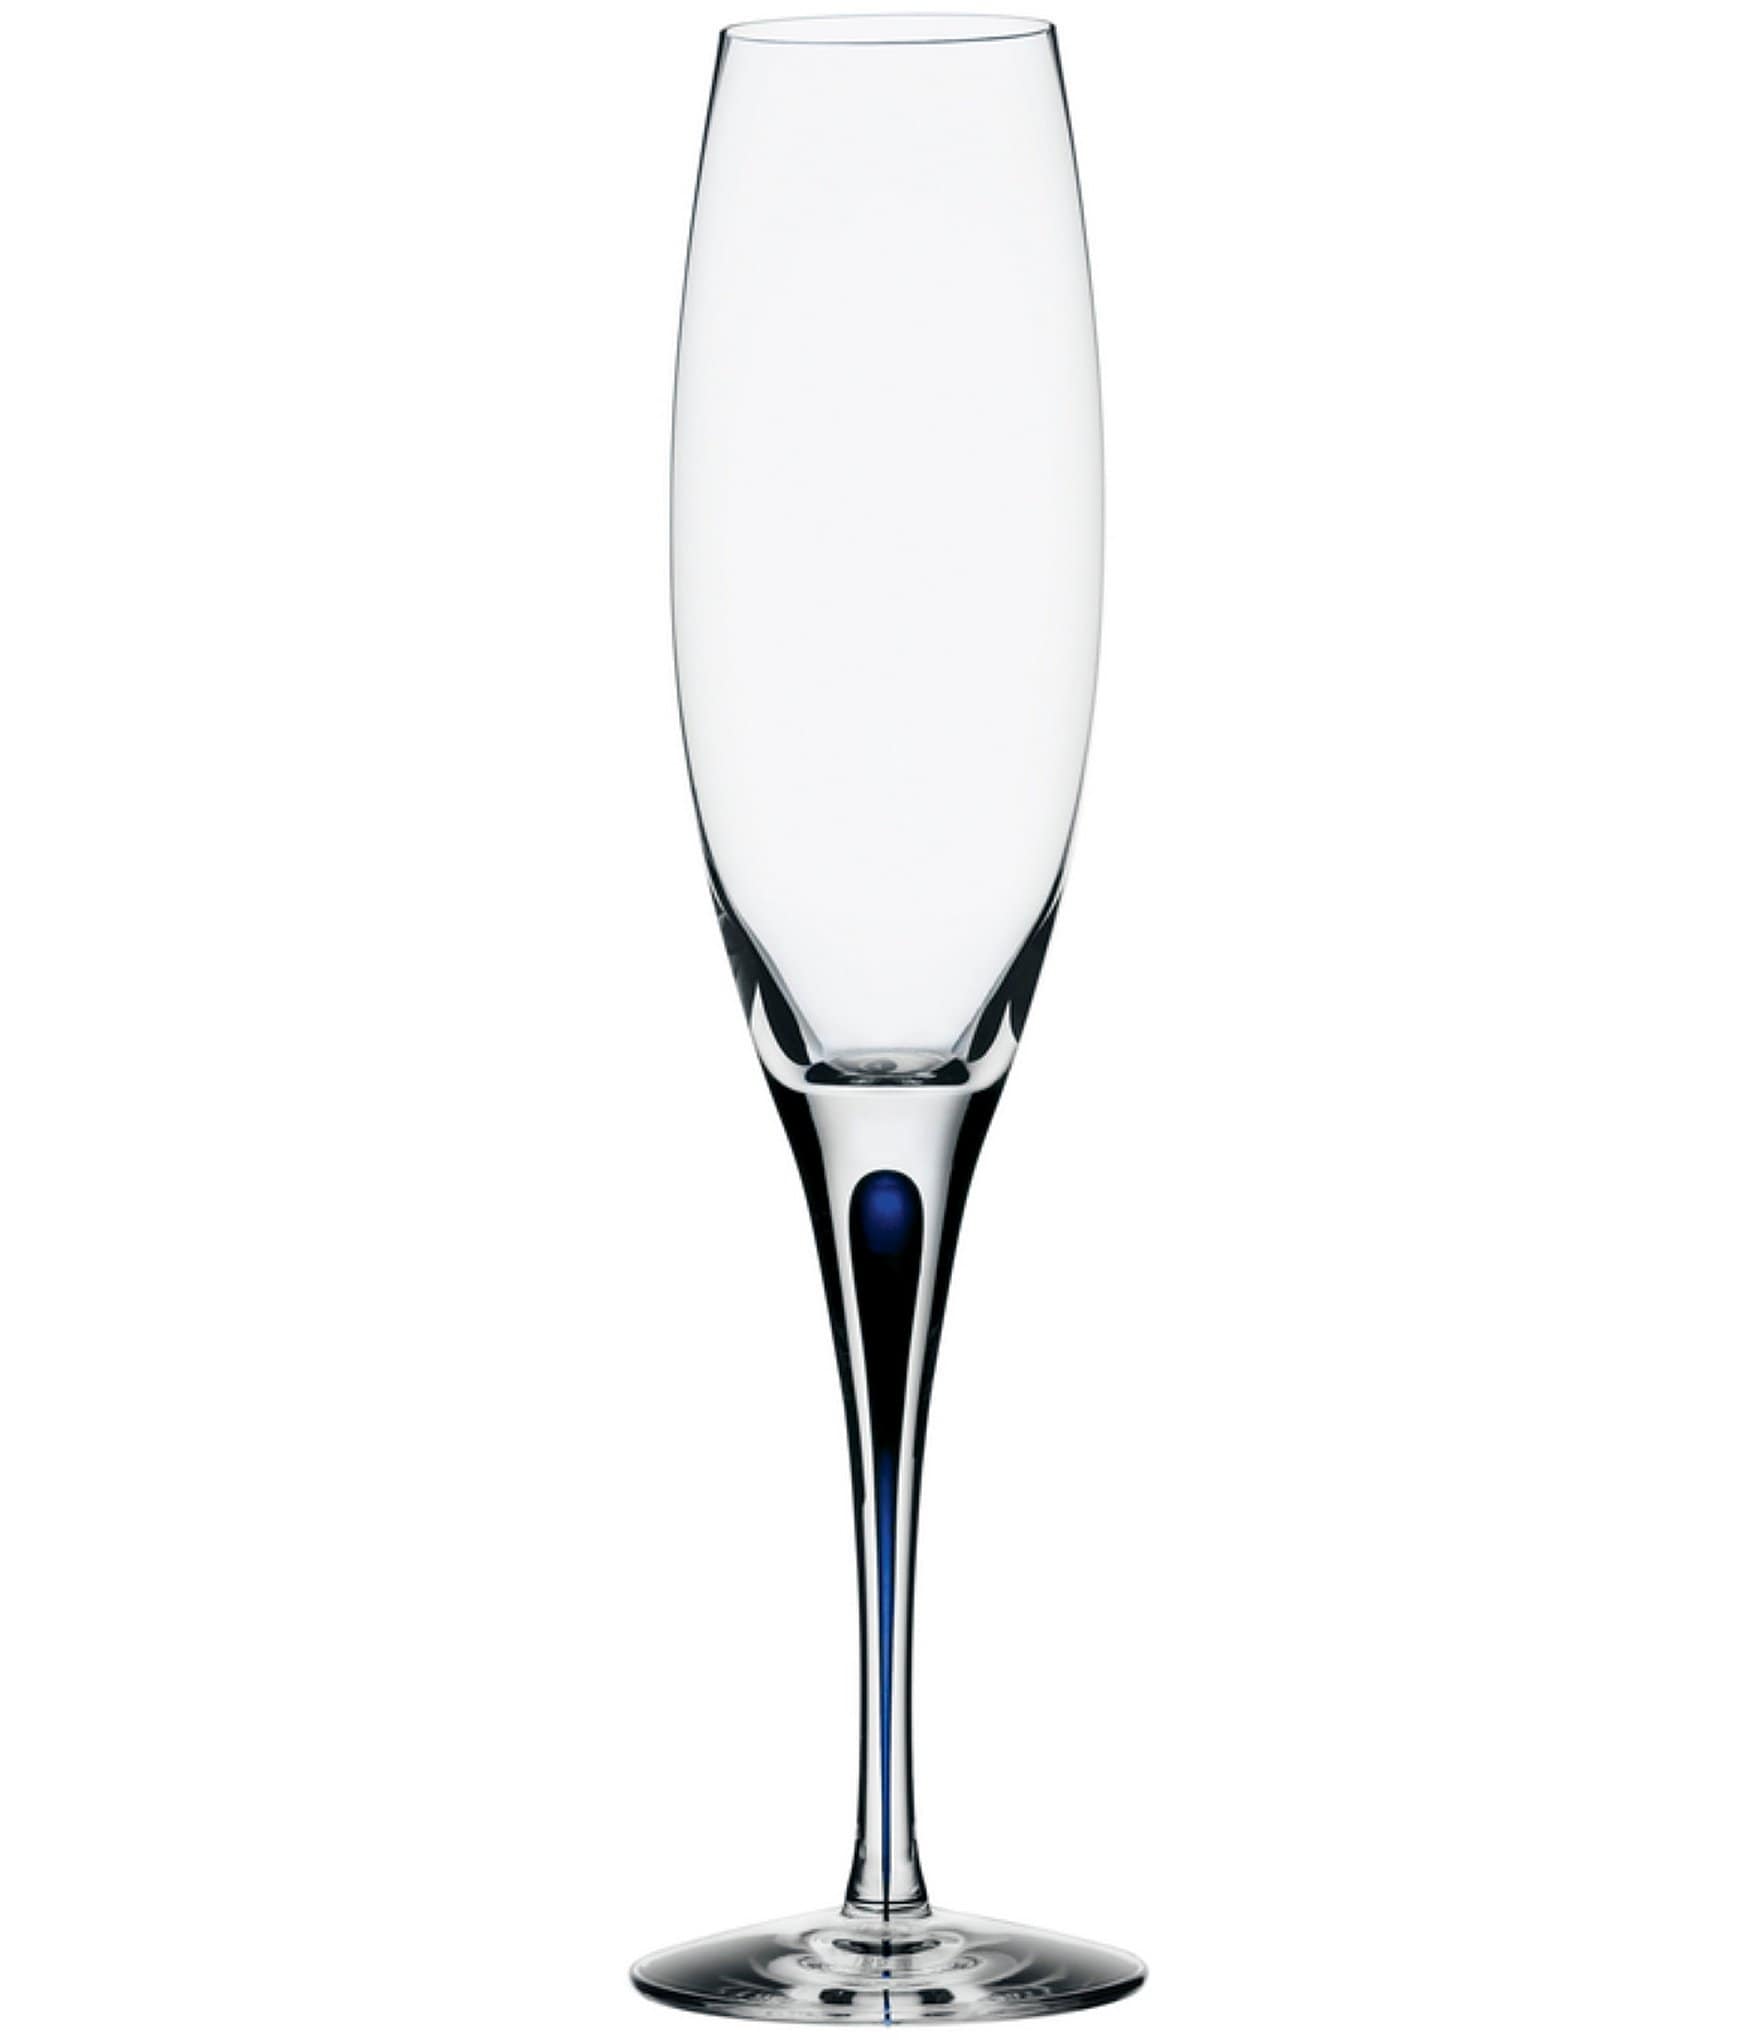 Blue Stem Crystal Champagne Flutes 7 oz Set-4